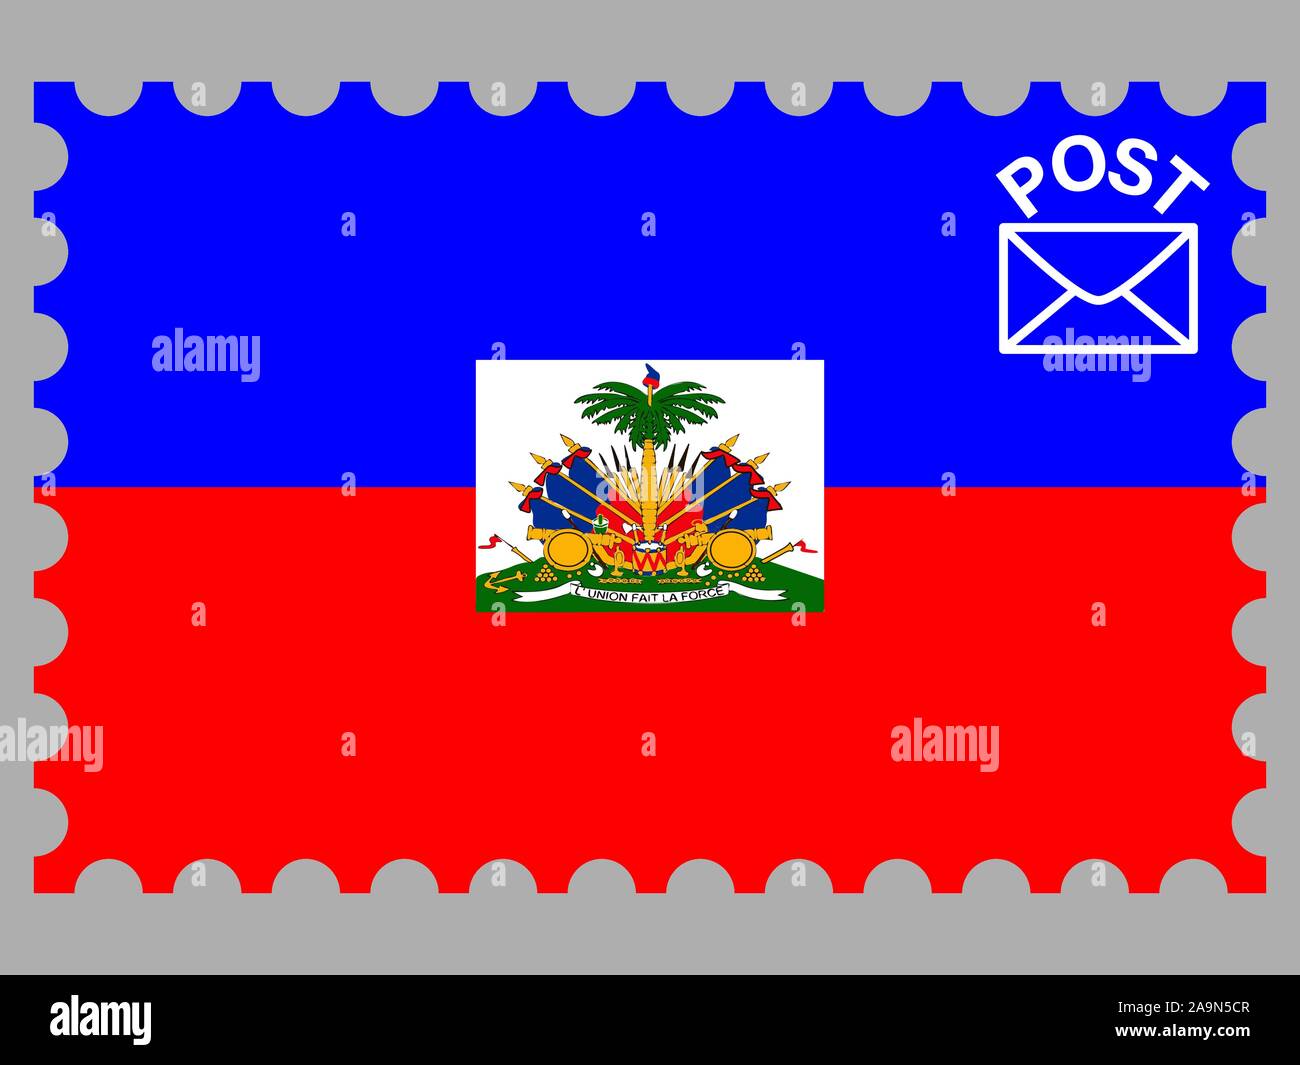 Drapeau national de la République d'Haïti. couleurs d'origine et de proportion. Illustration vectorielle, simplement, en provenance de pays. Illustration de Vecteur